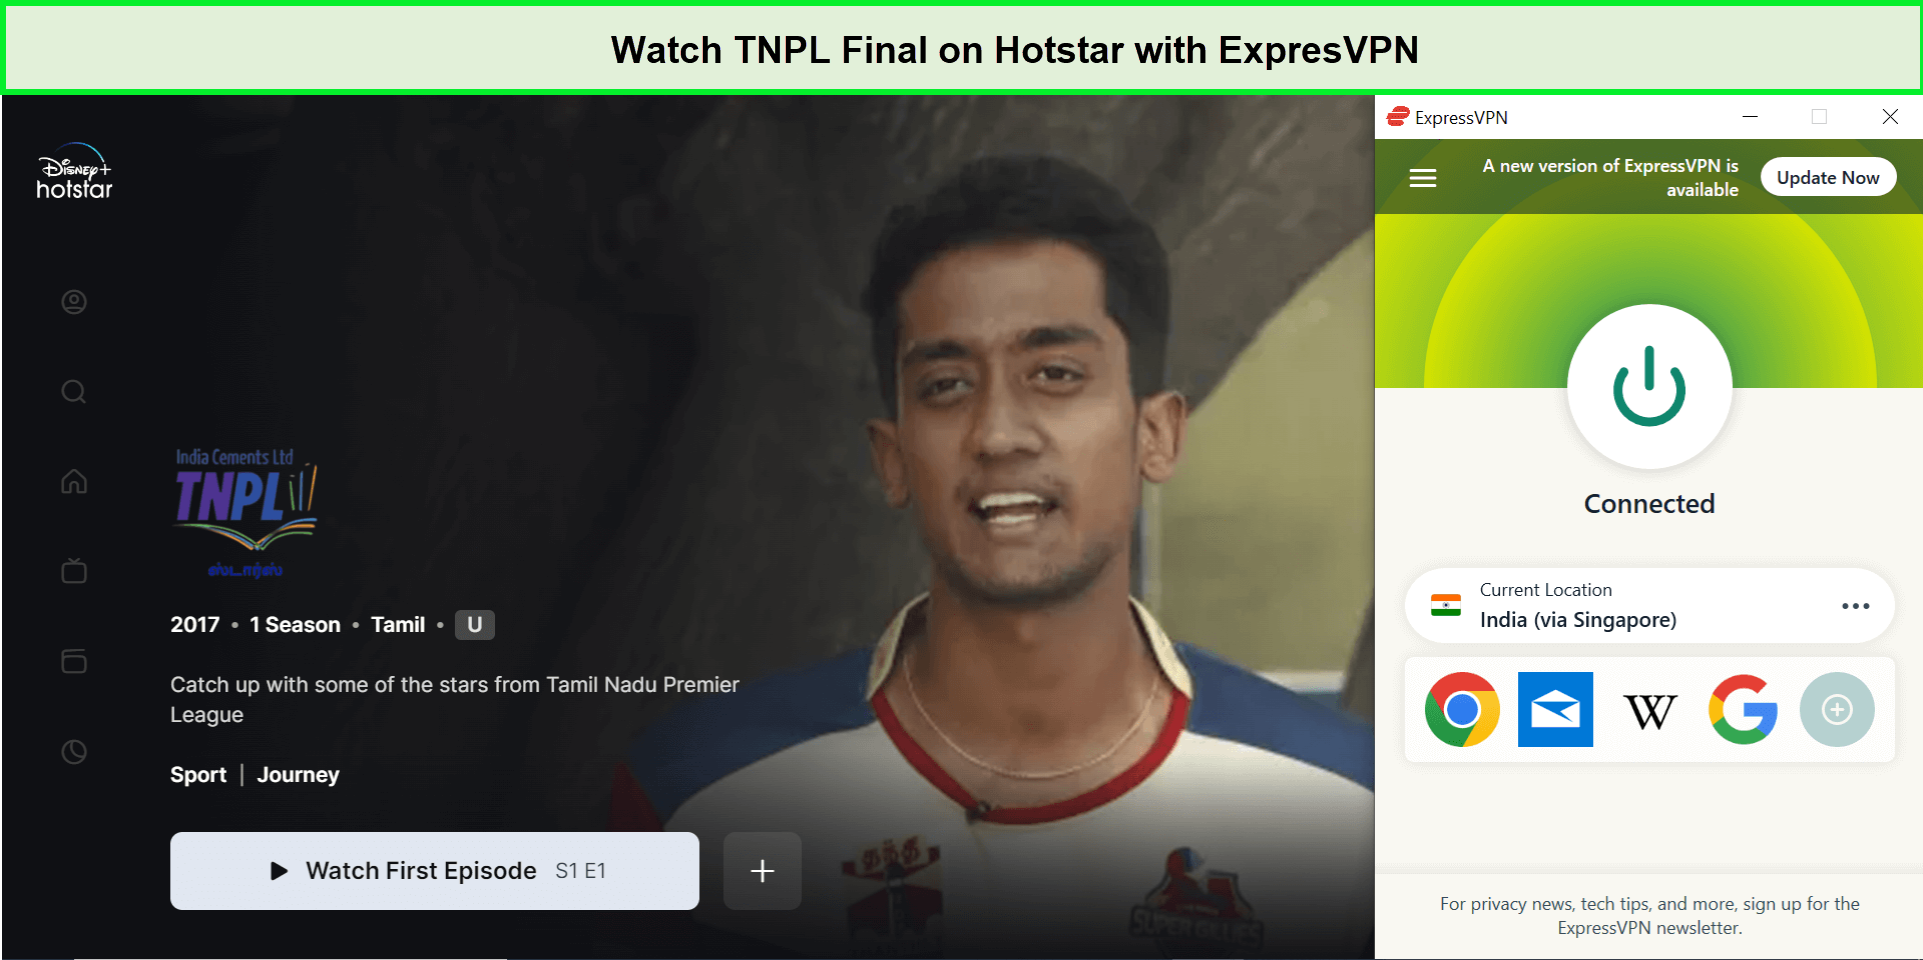 Watch-TNPL-Final-in-Hong Kong-on-Hotstar-with-ExpresVPN